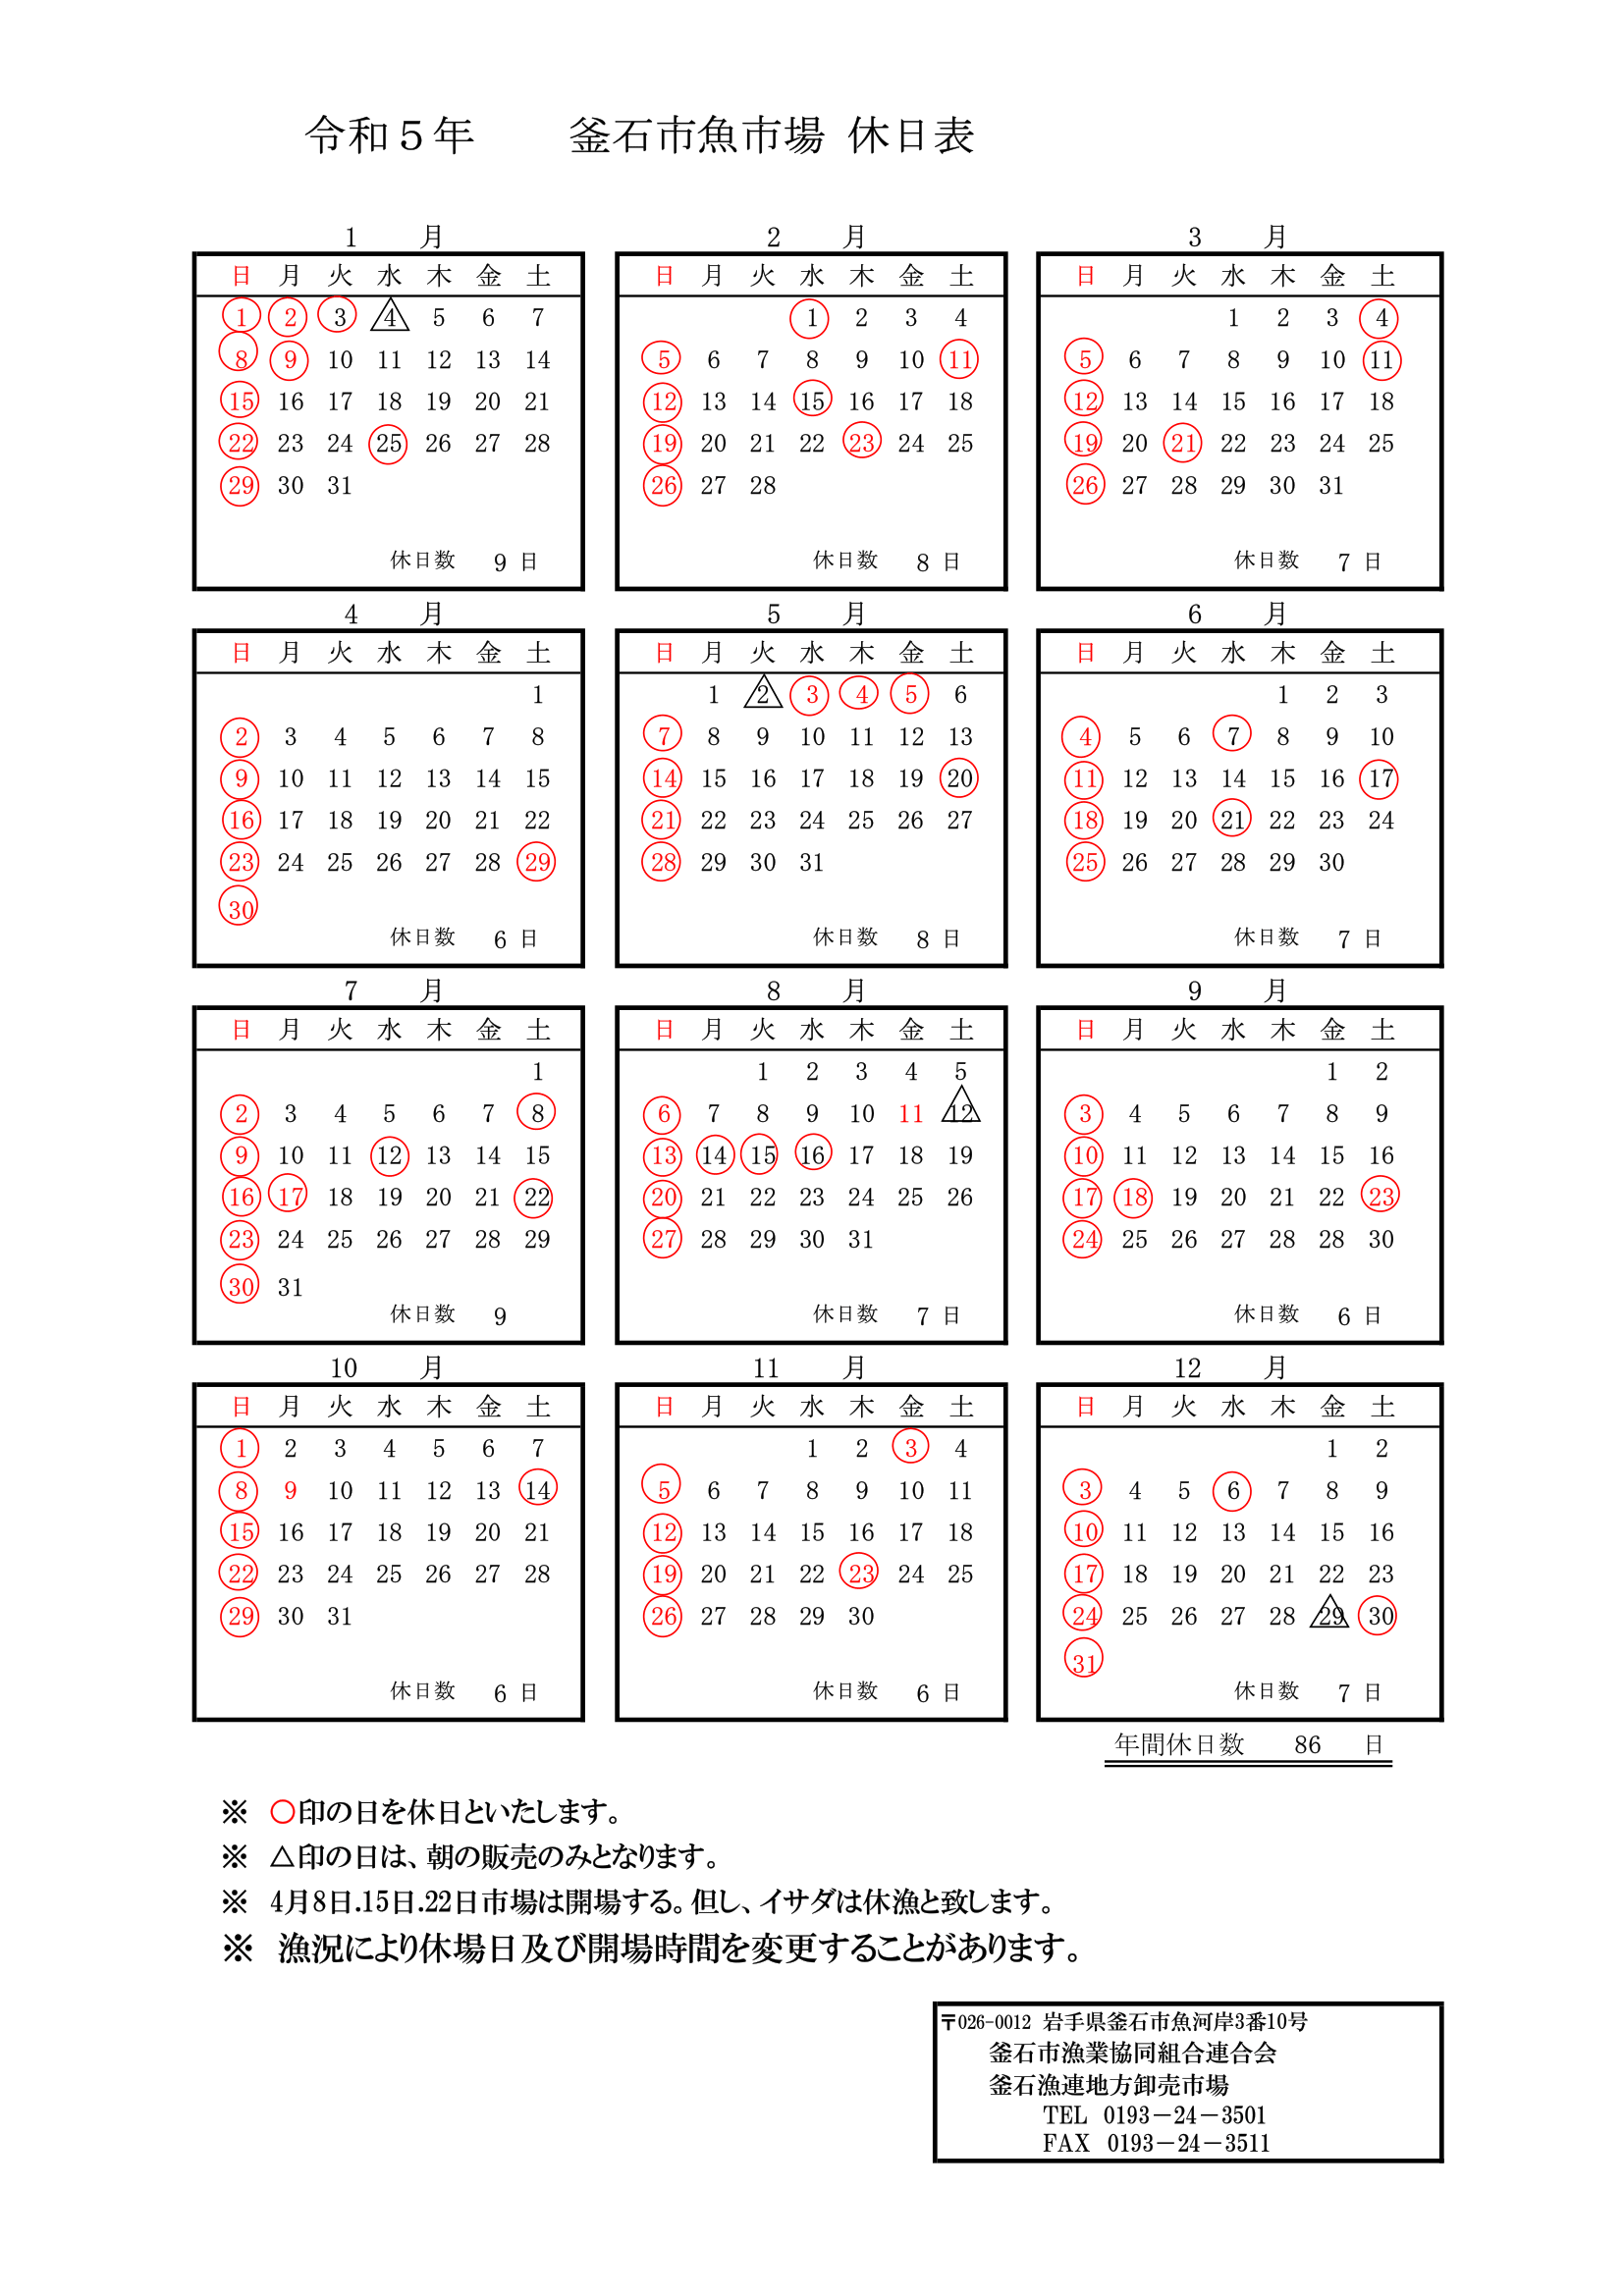 釜石魚市場 カレンダー